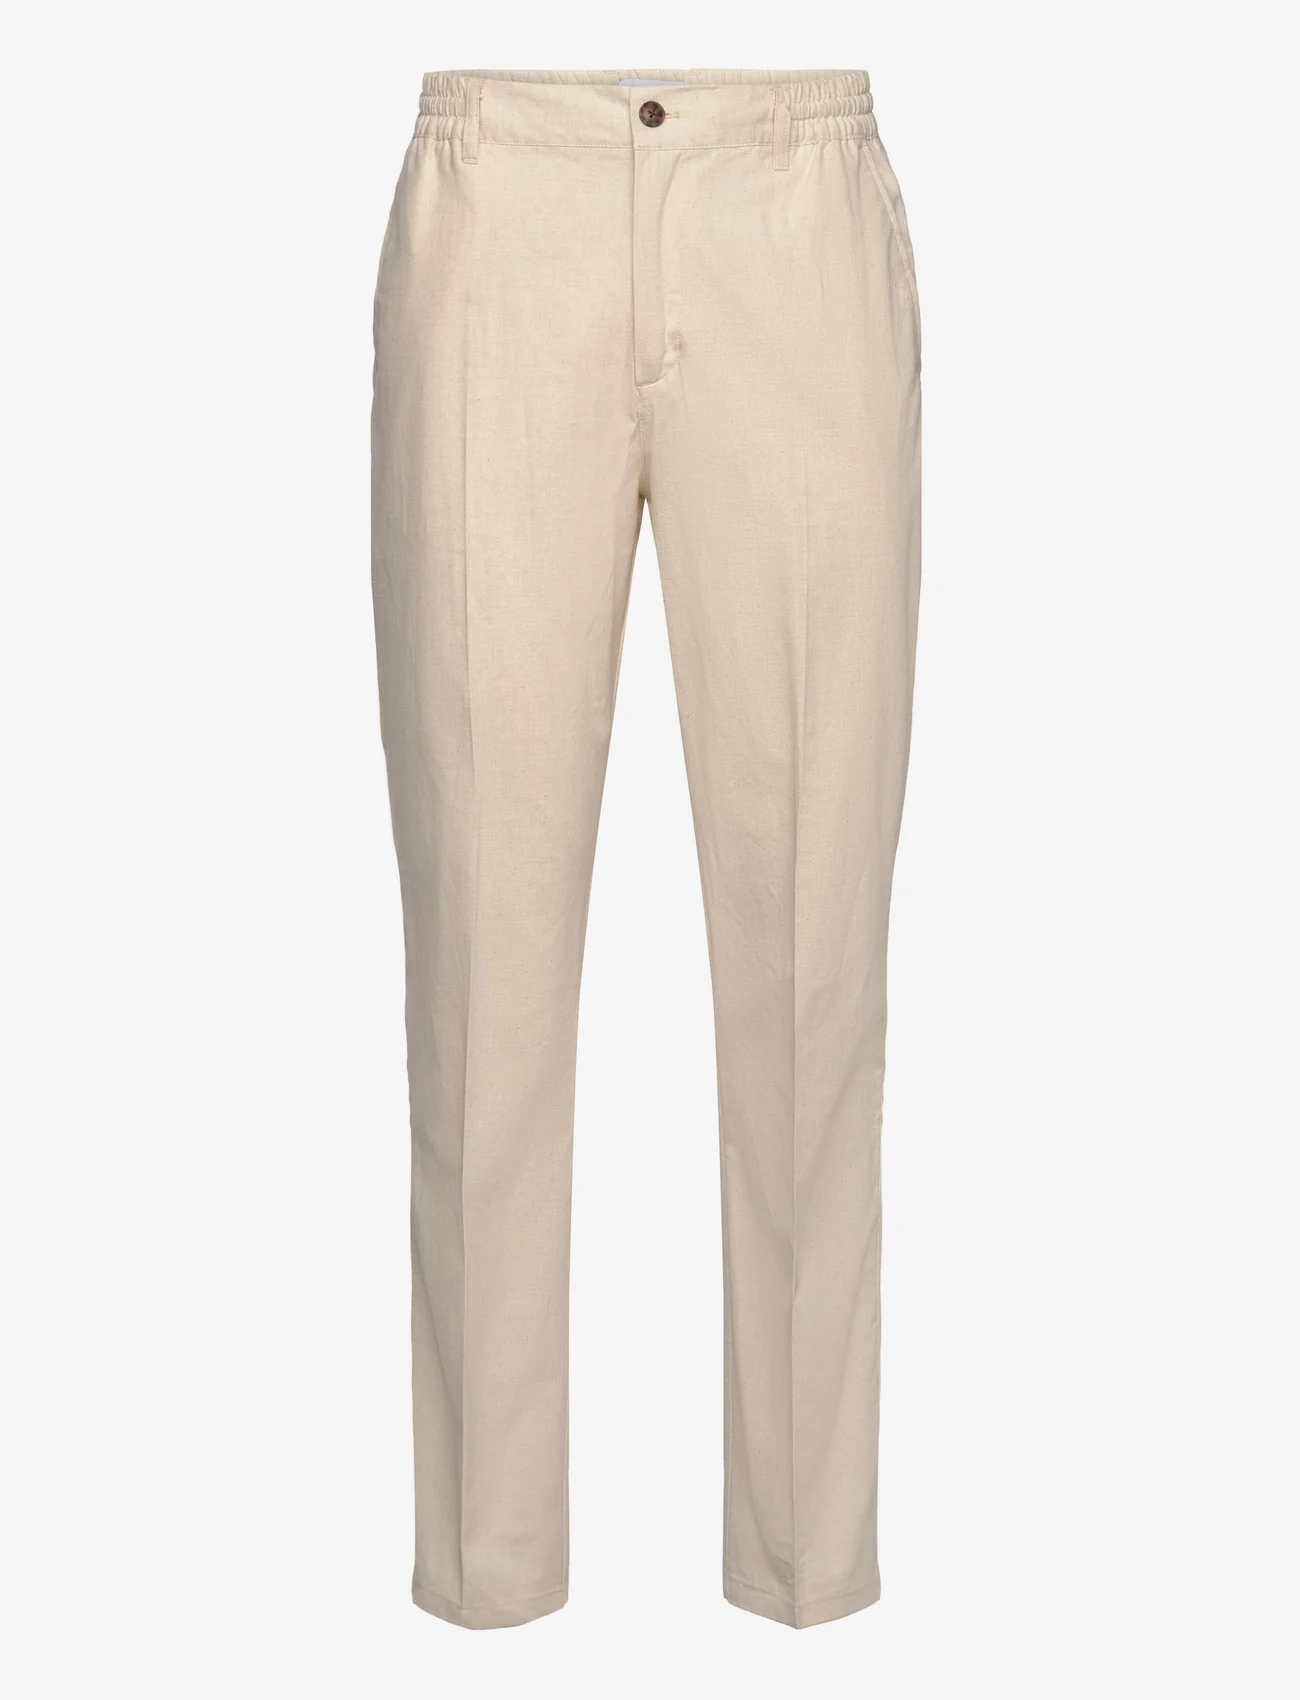 Les Deux - Pino Linen Pants - linen trousers - ivory - 0